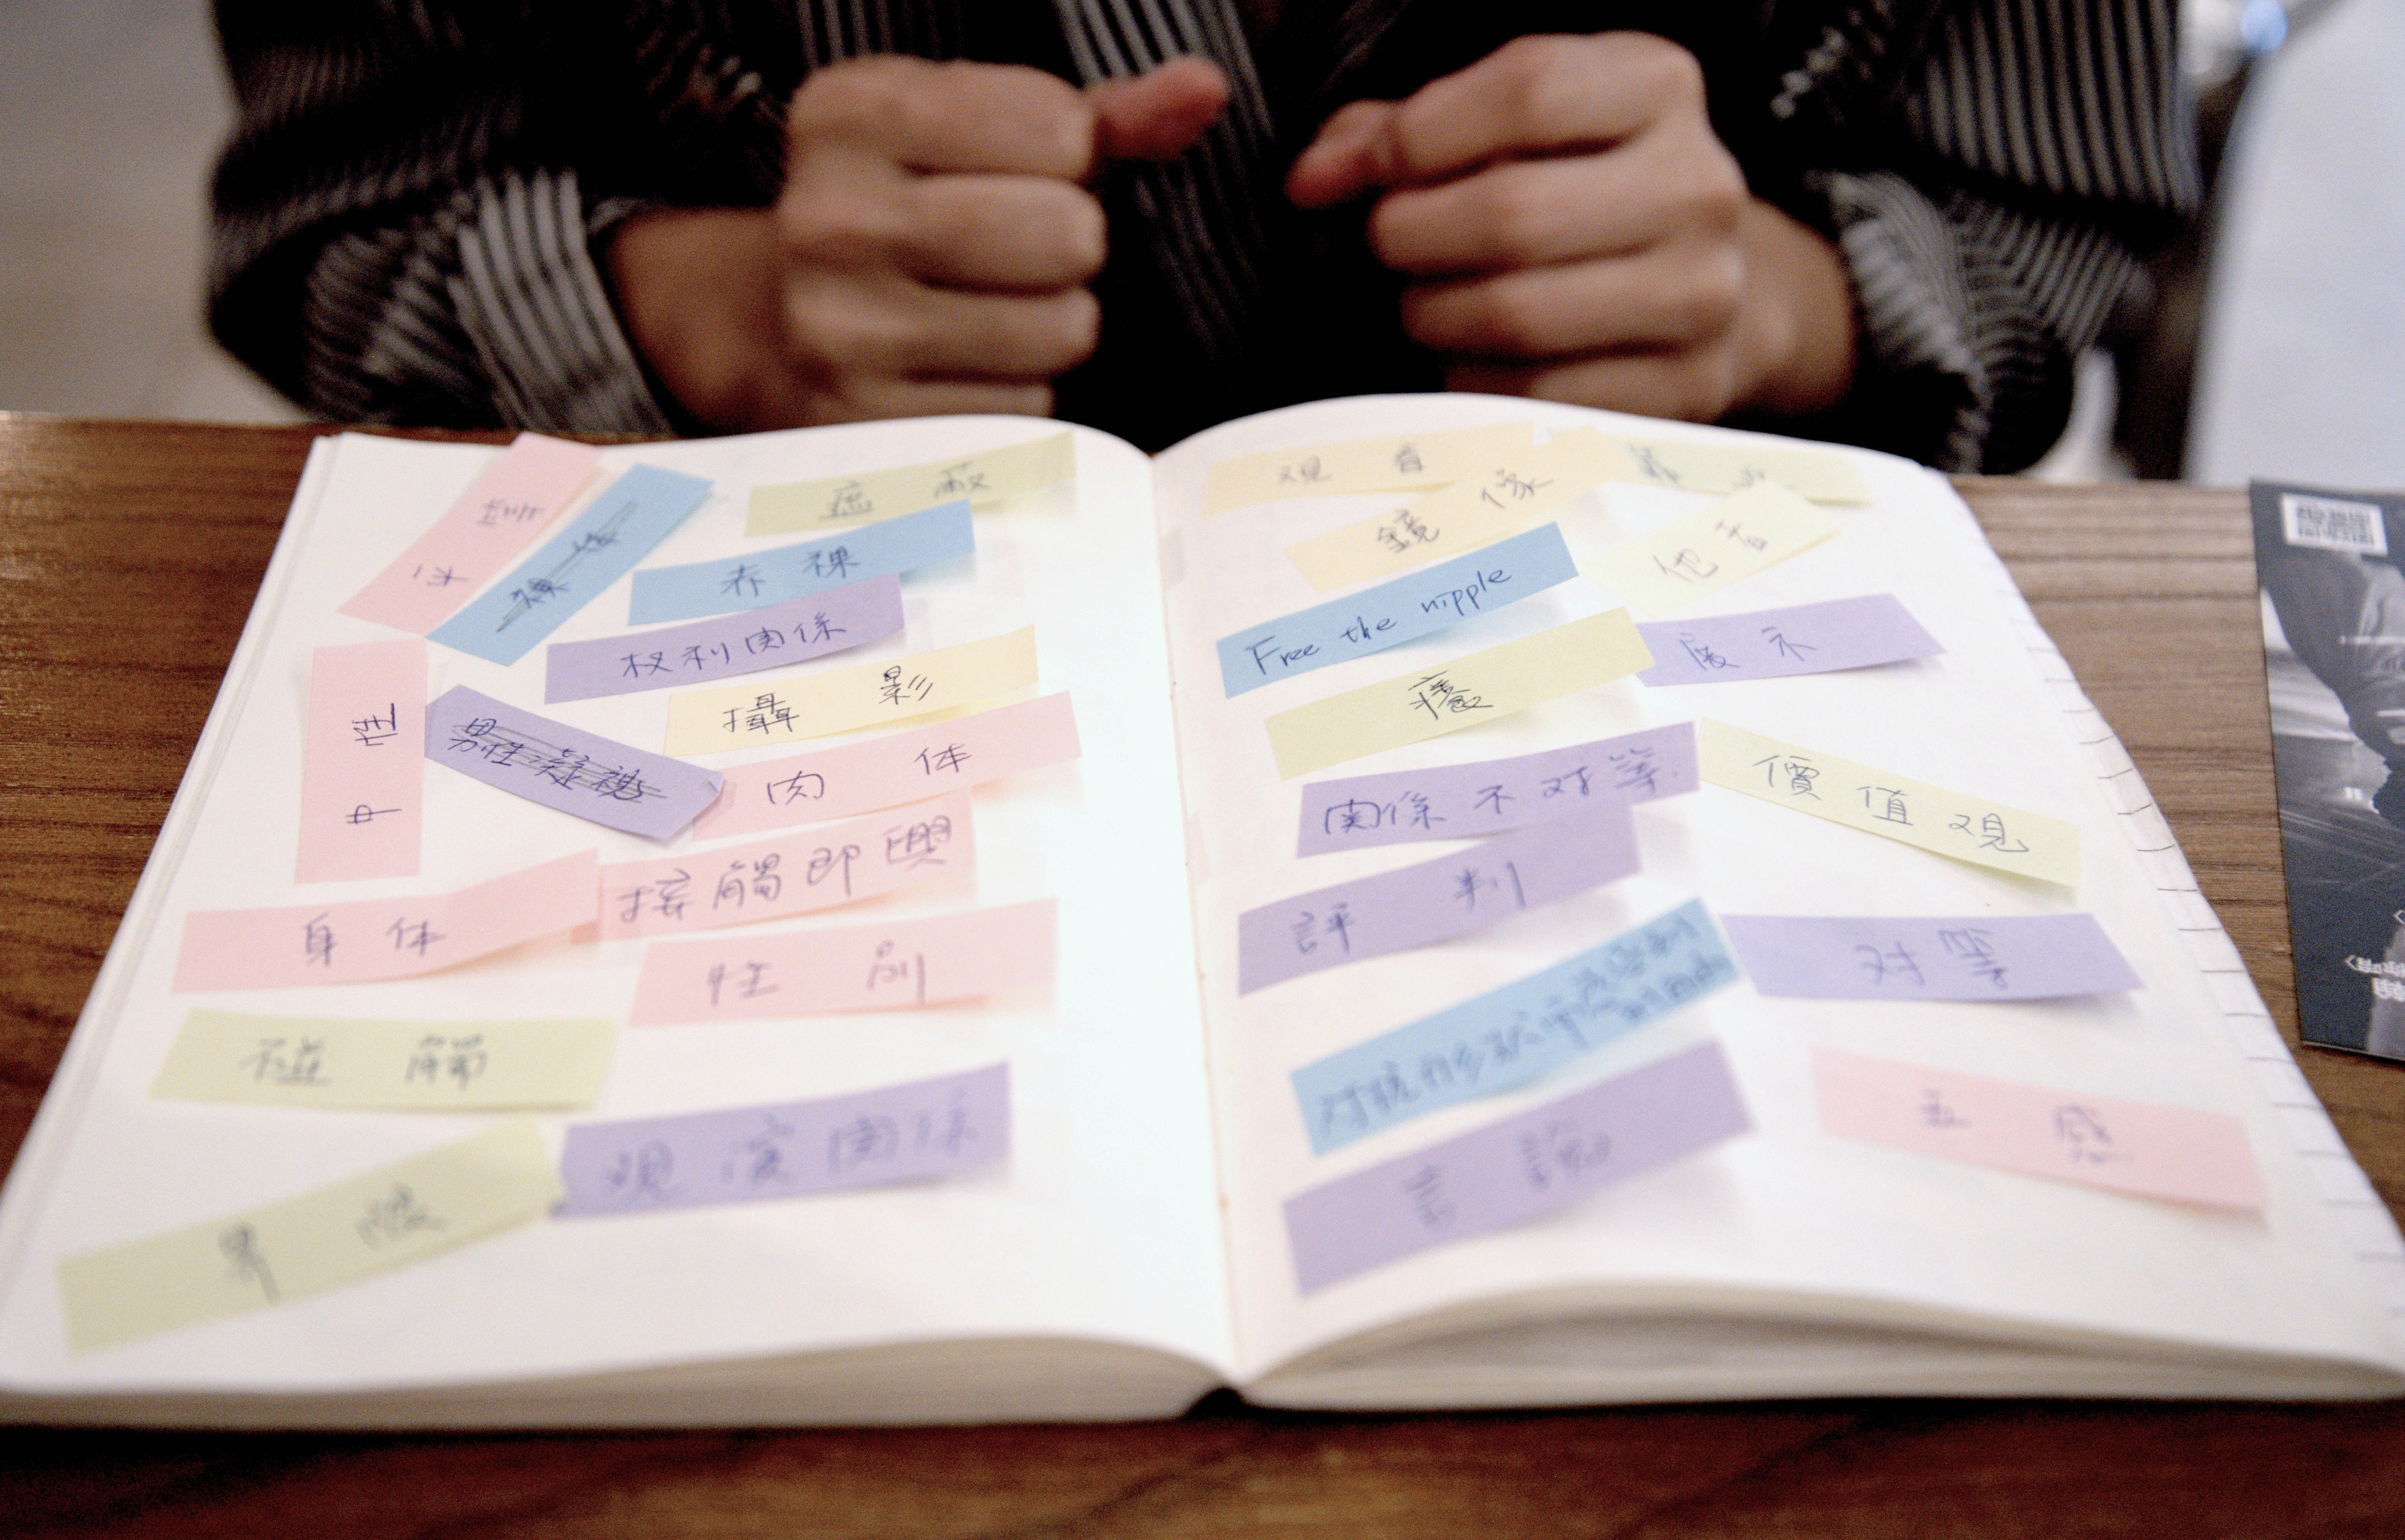 王甯翻開她本子中記錄著舞作關鍵字的一頁。